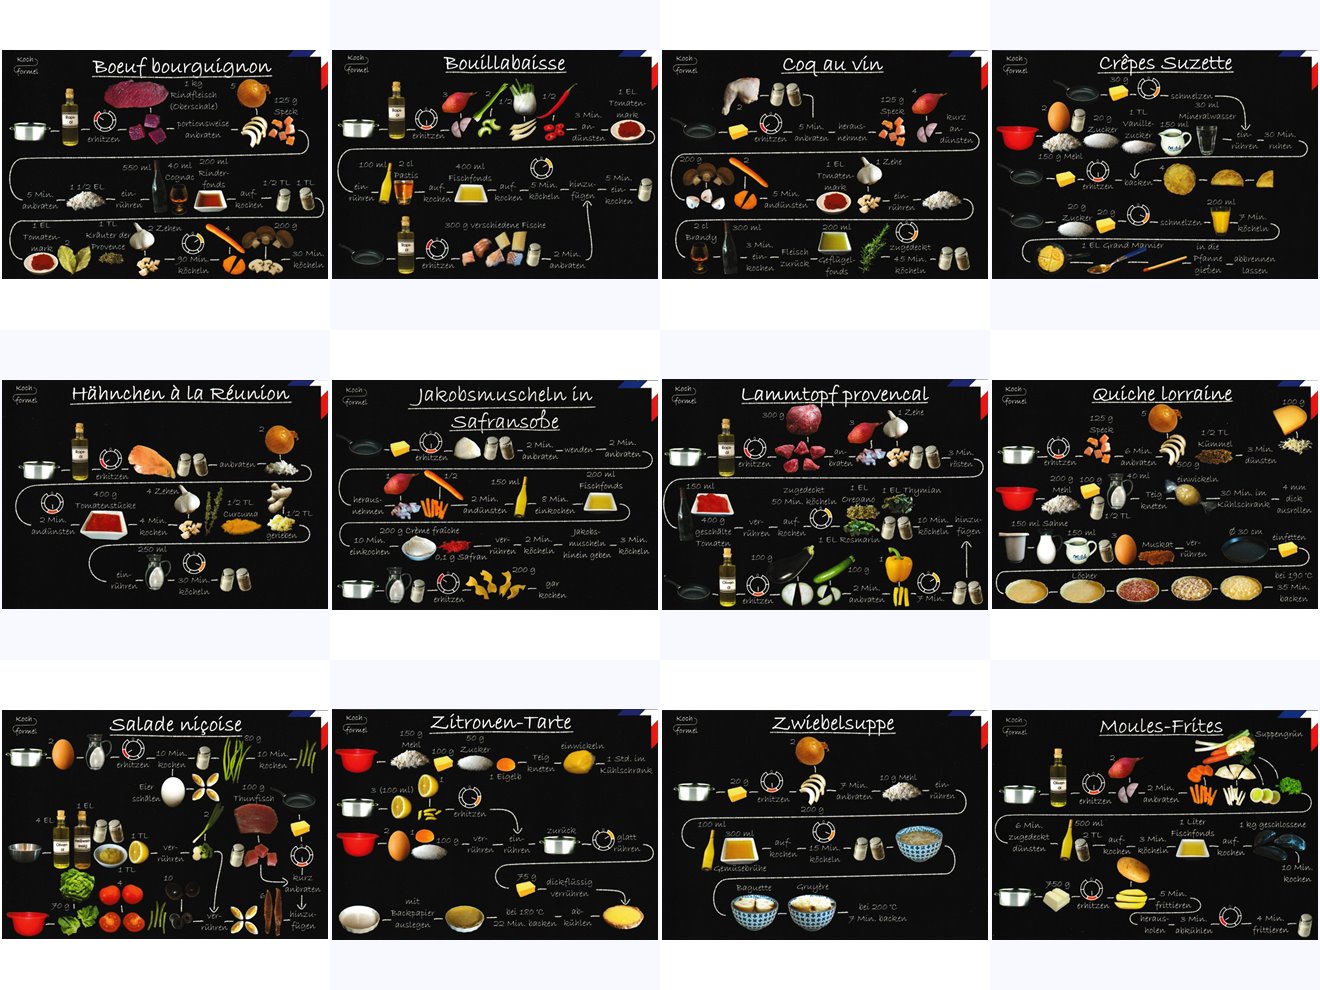 Komplett-Set "Französische Küche auf 12 Rezept-Postkarten"